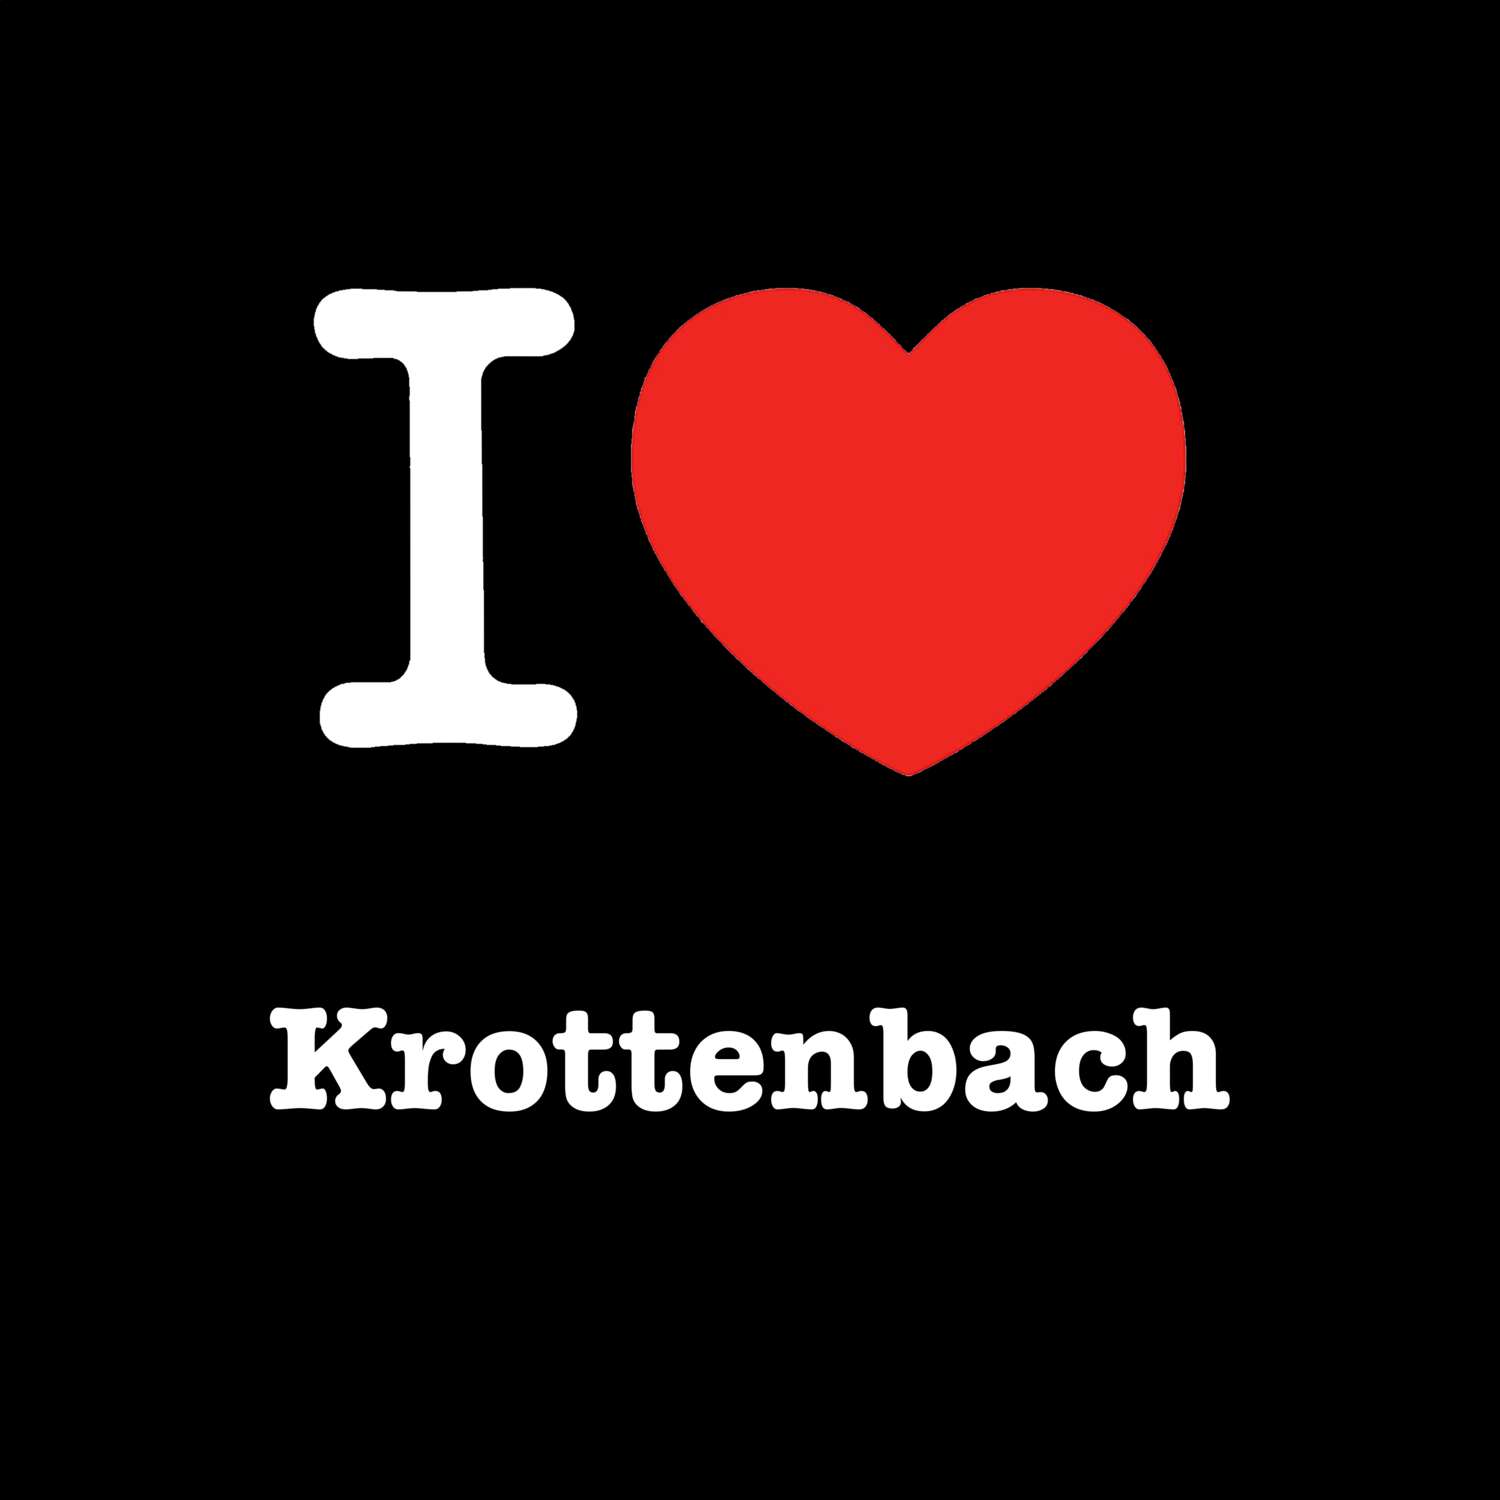 Krottenbach T-Shirt »I love«